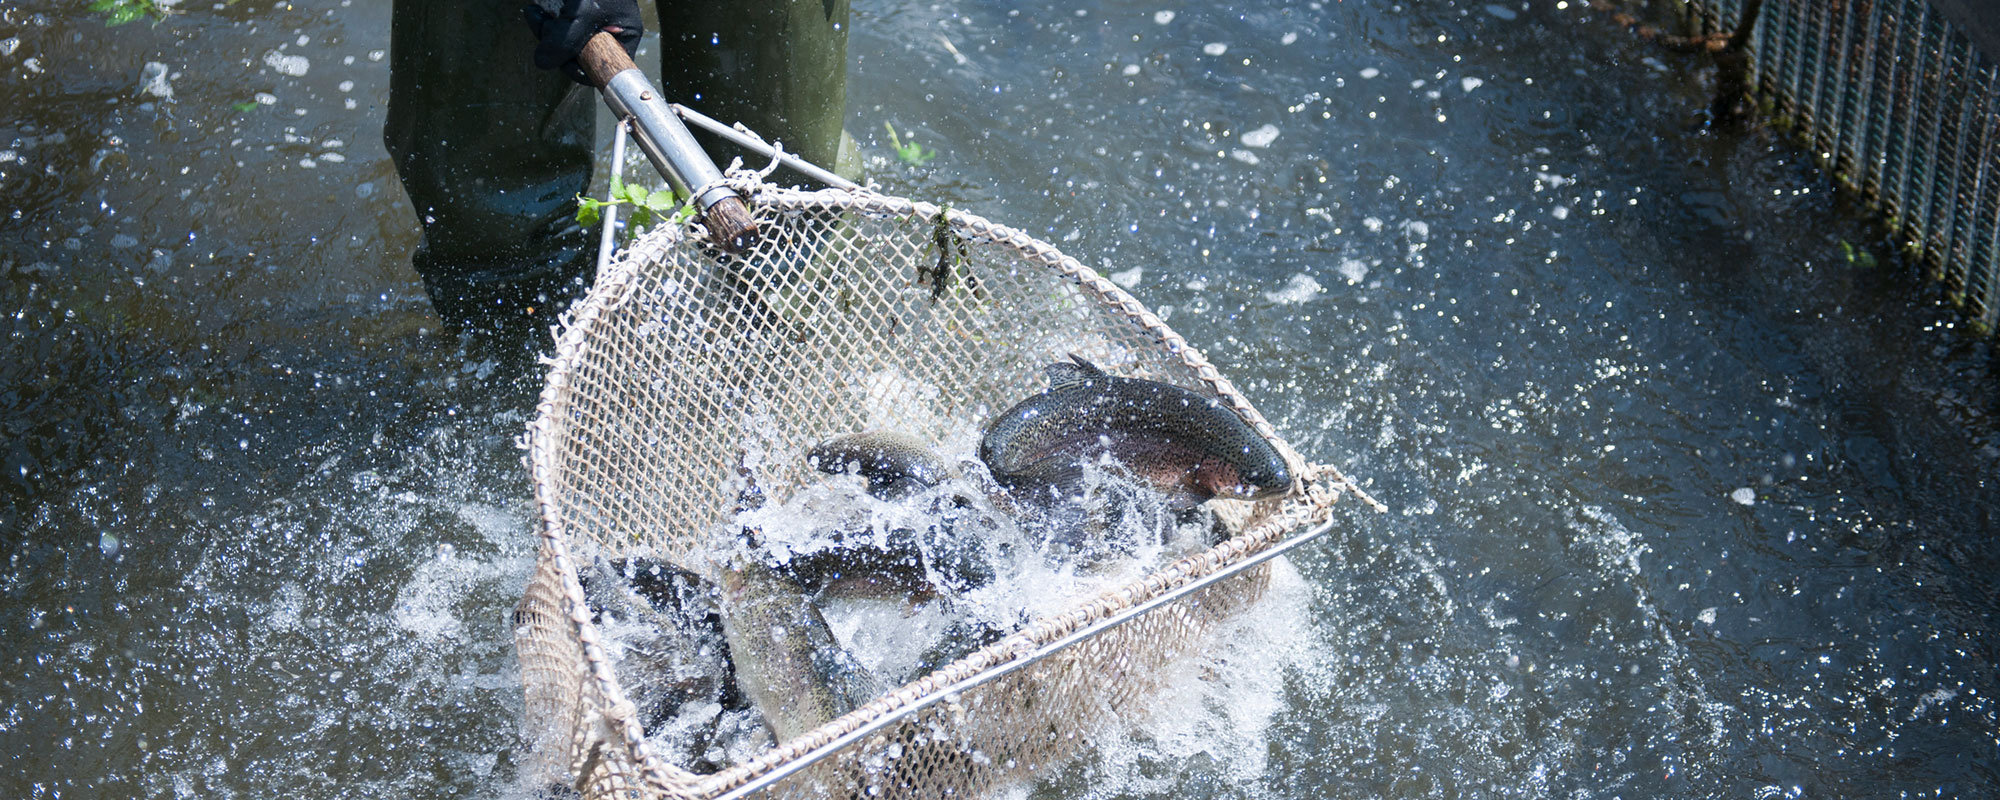 Fische in einem Kescher Netz